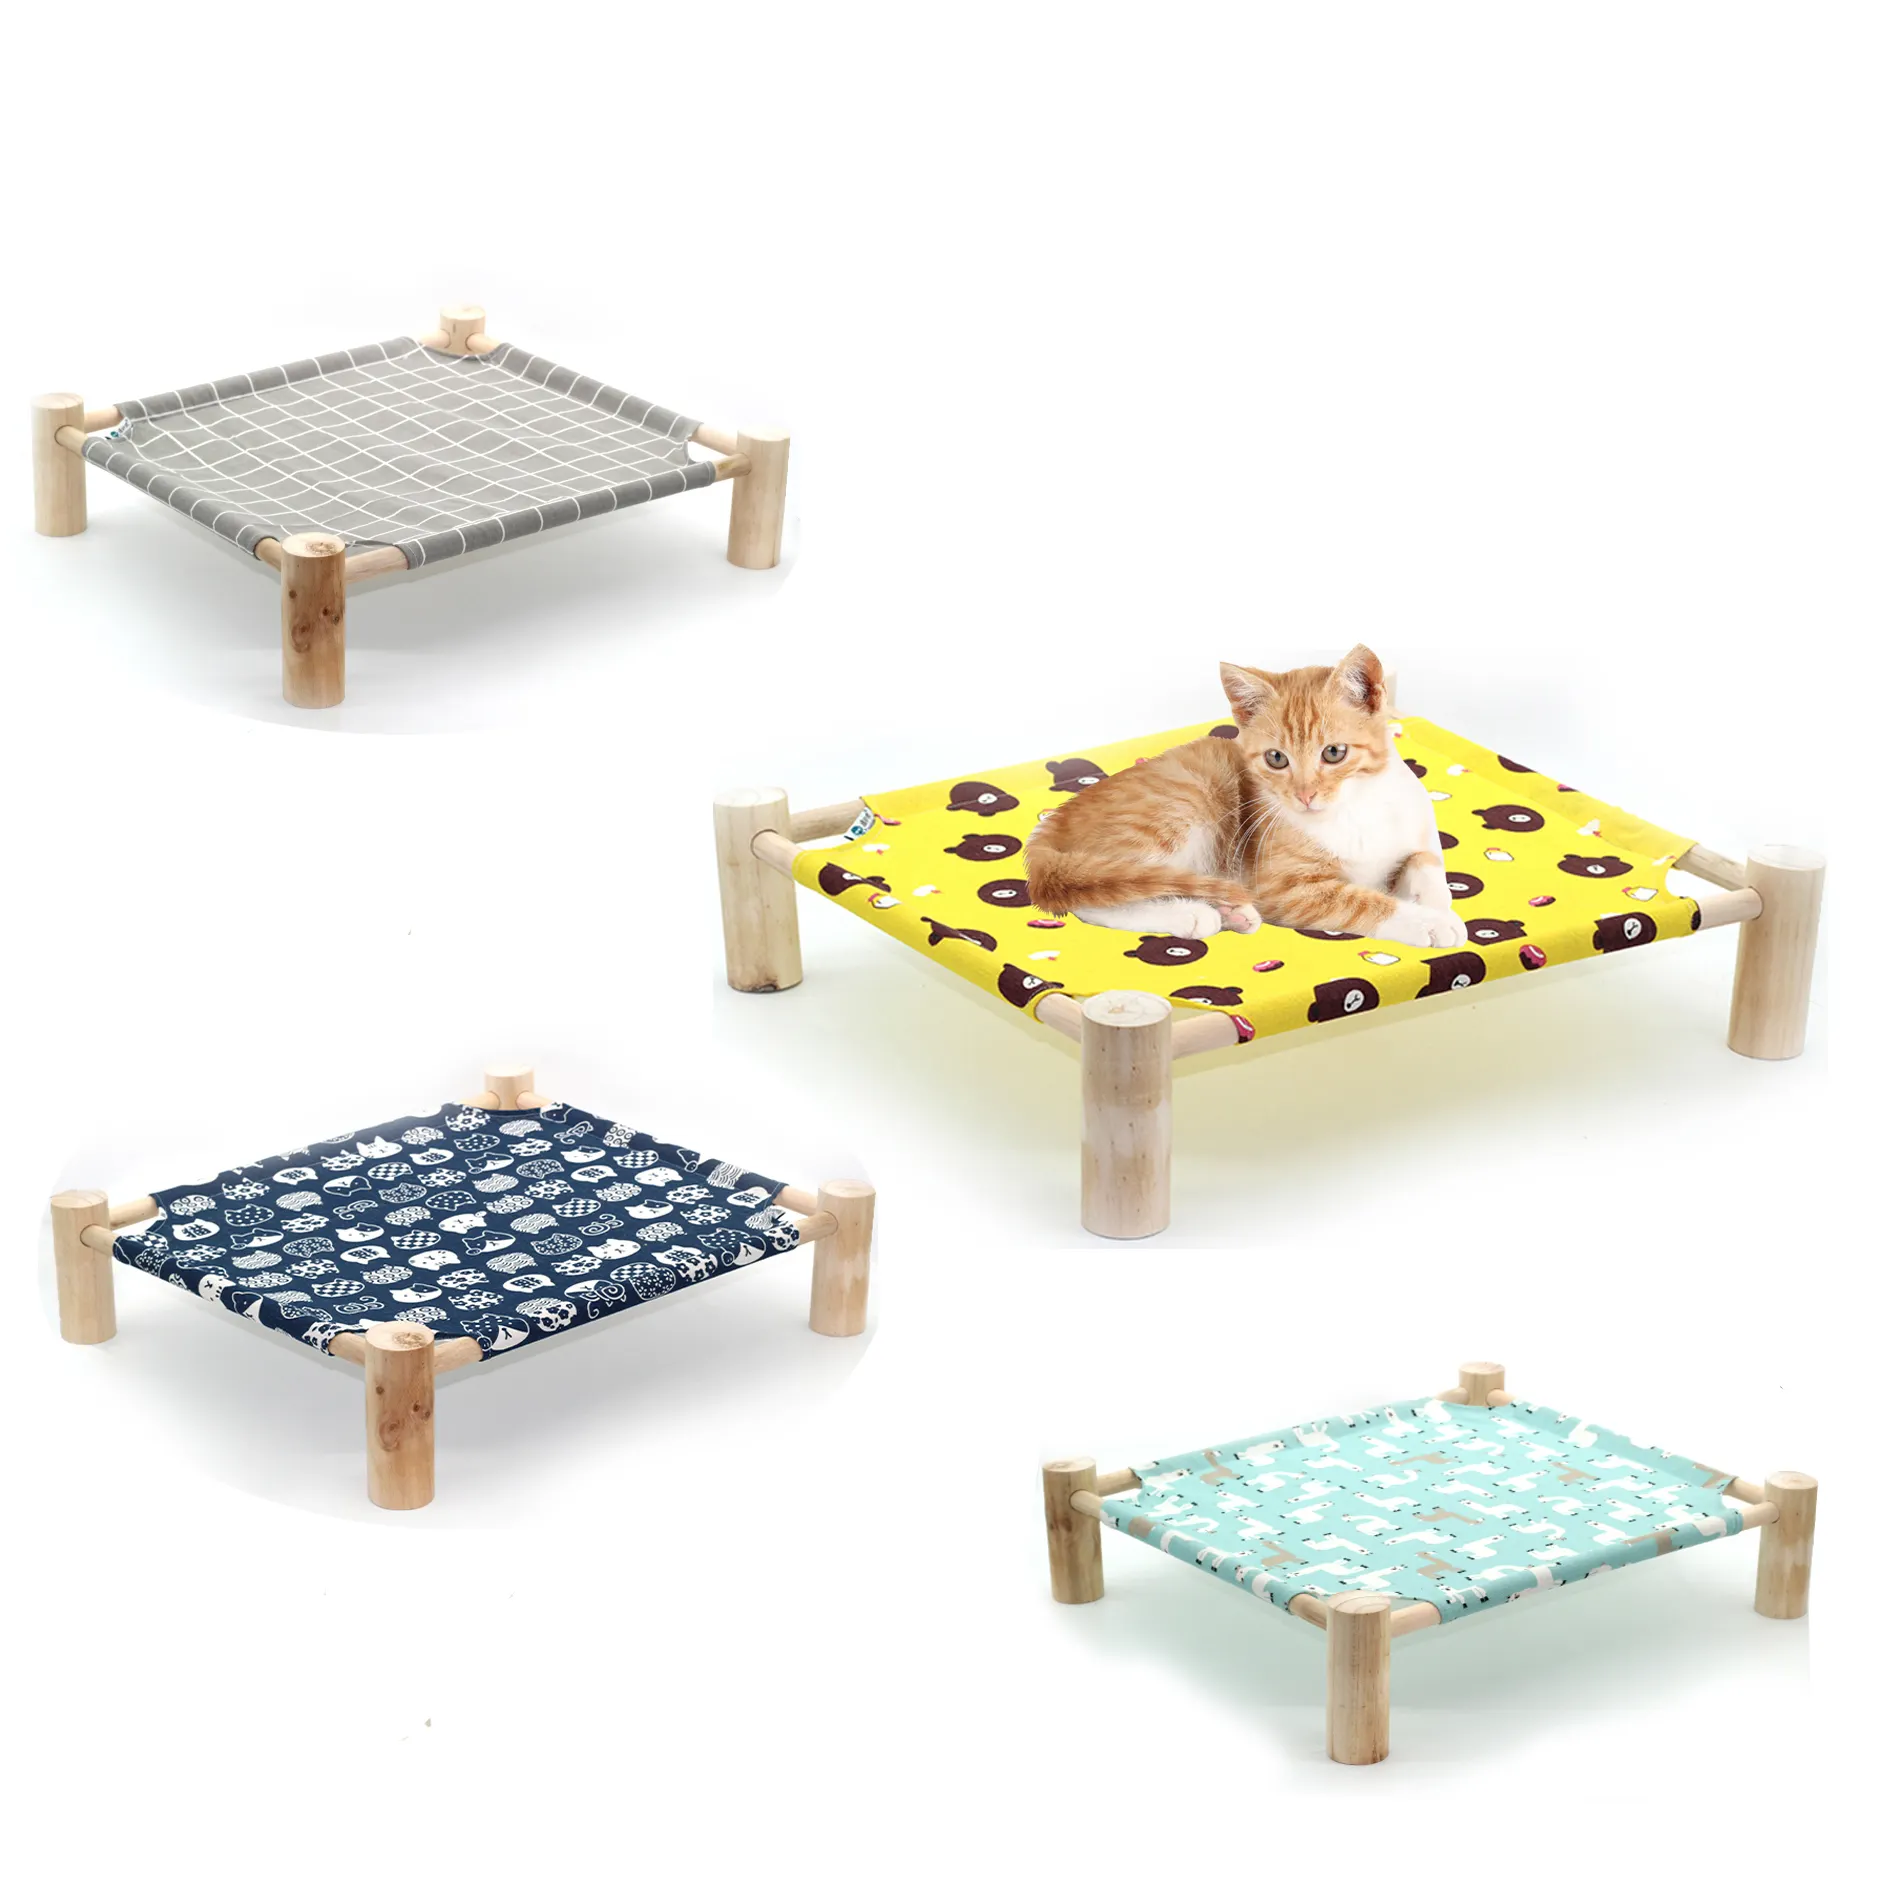 Поднятая деревянная портативная охлаждающая кровать, гамак для кошек с подставкой, моющаяся хлопчатобумажная холщовая кровать, поднятая кровать для собак и кошек